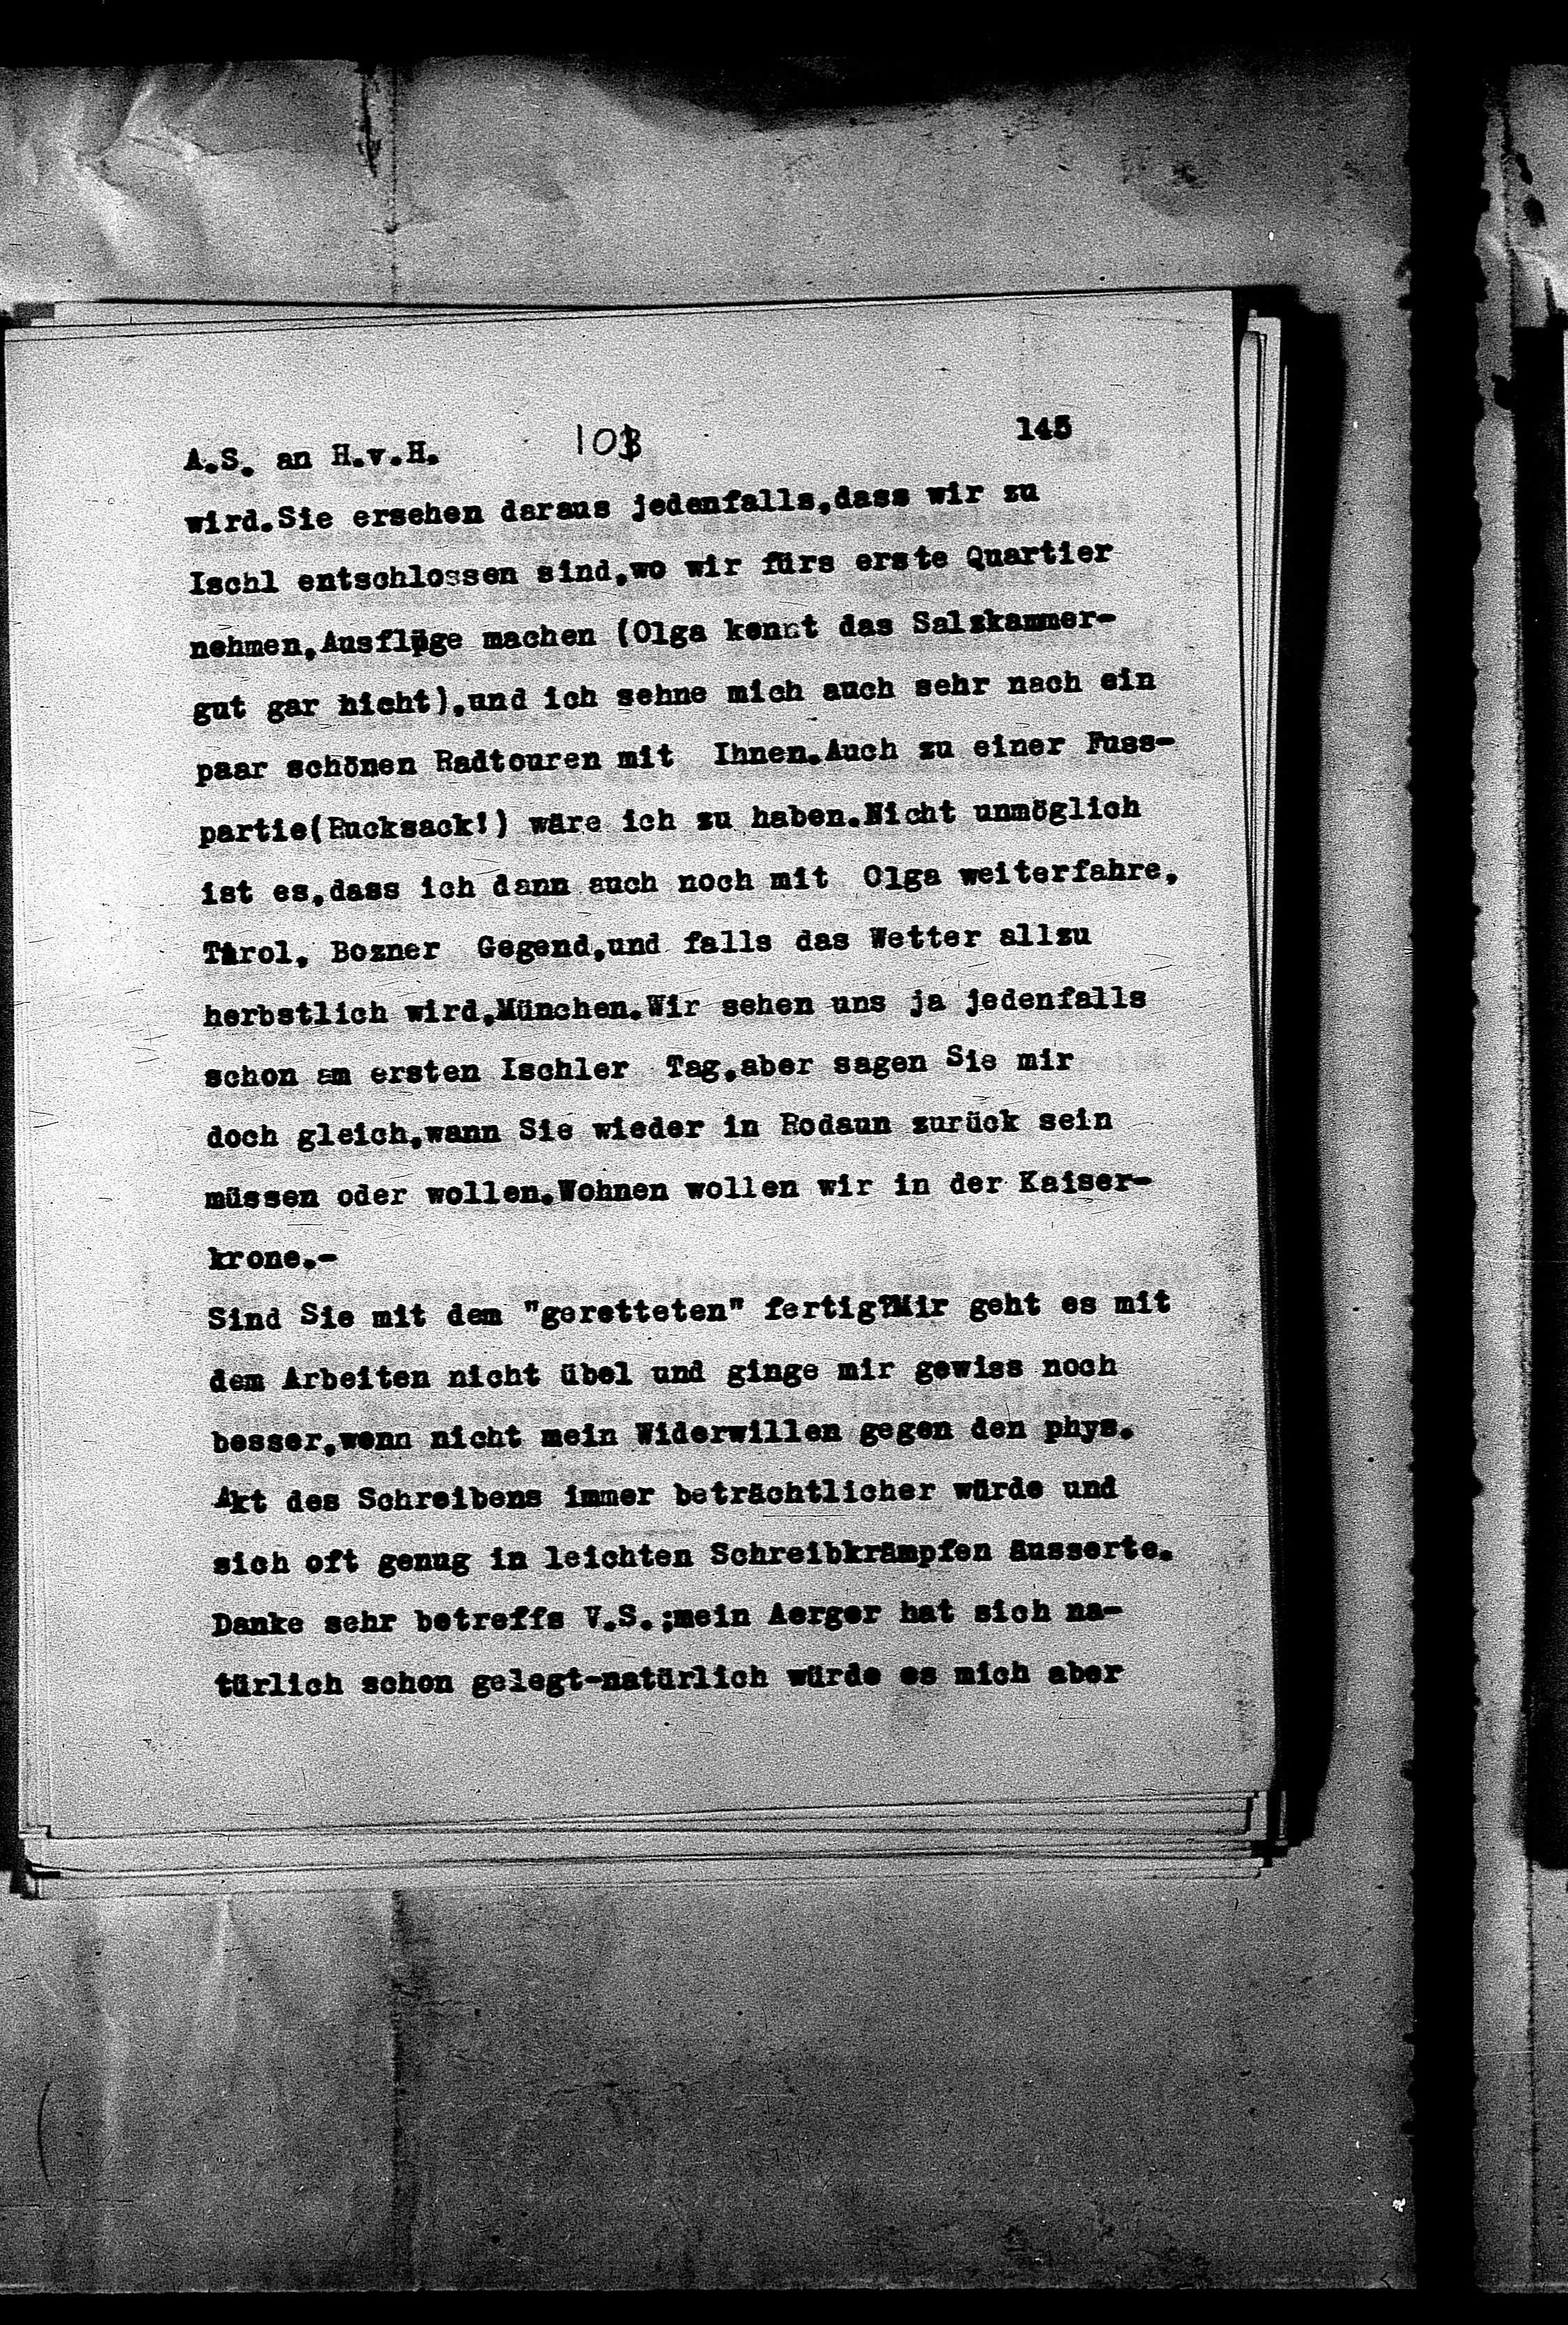 Vorschaubild für Hofmannsthal, Hugo von_AS an HvH Abschrift, HvH an AS, Originale (Mikrofilm 38), Seite 151